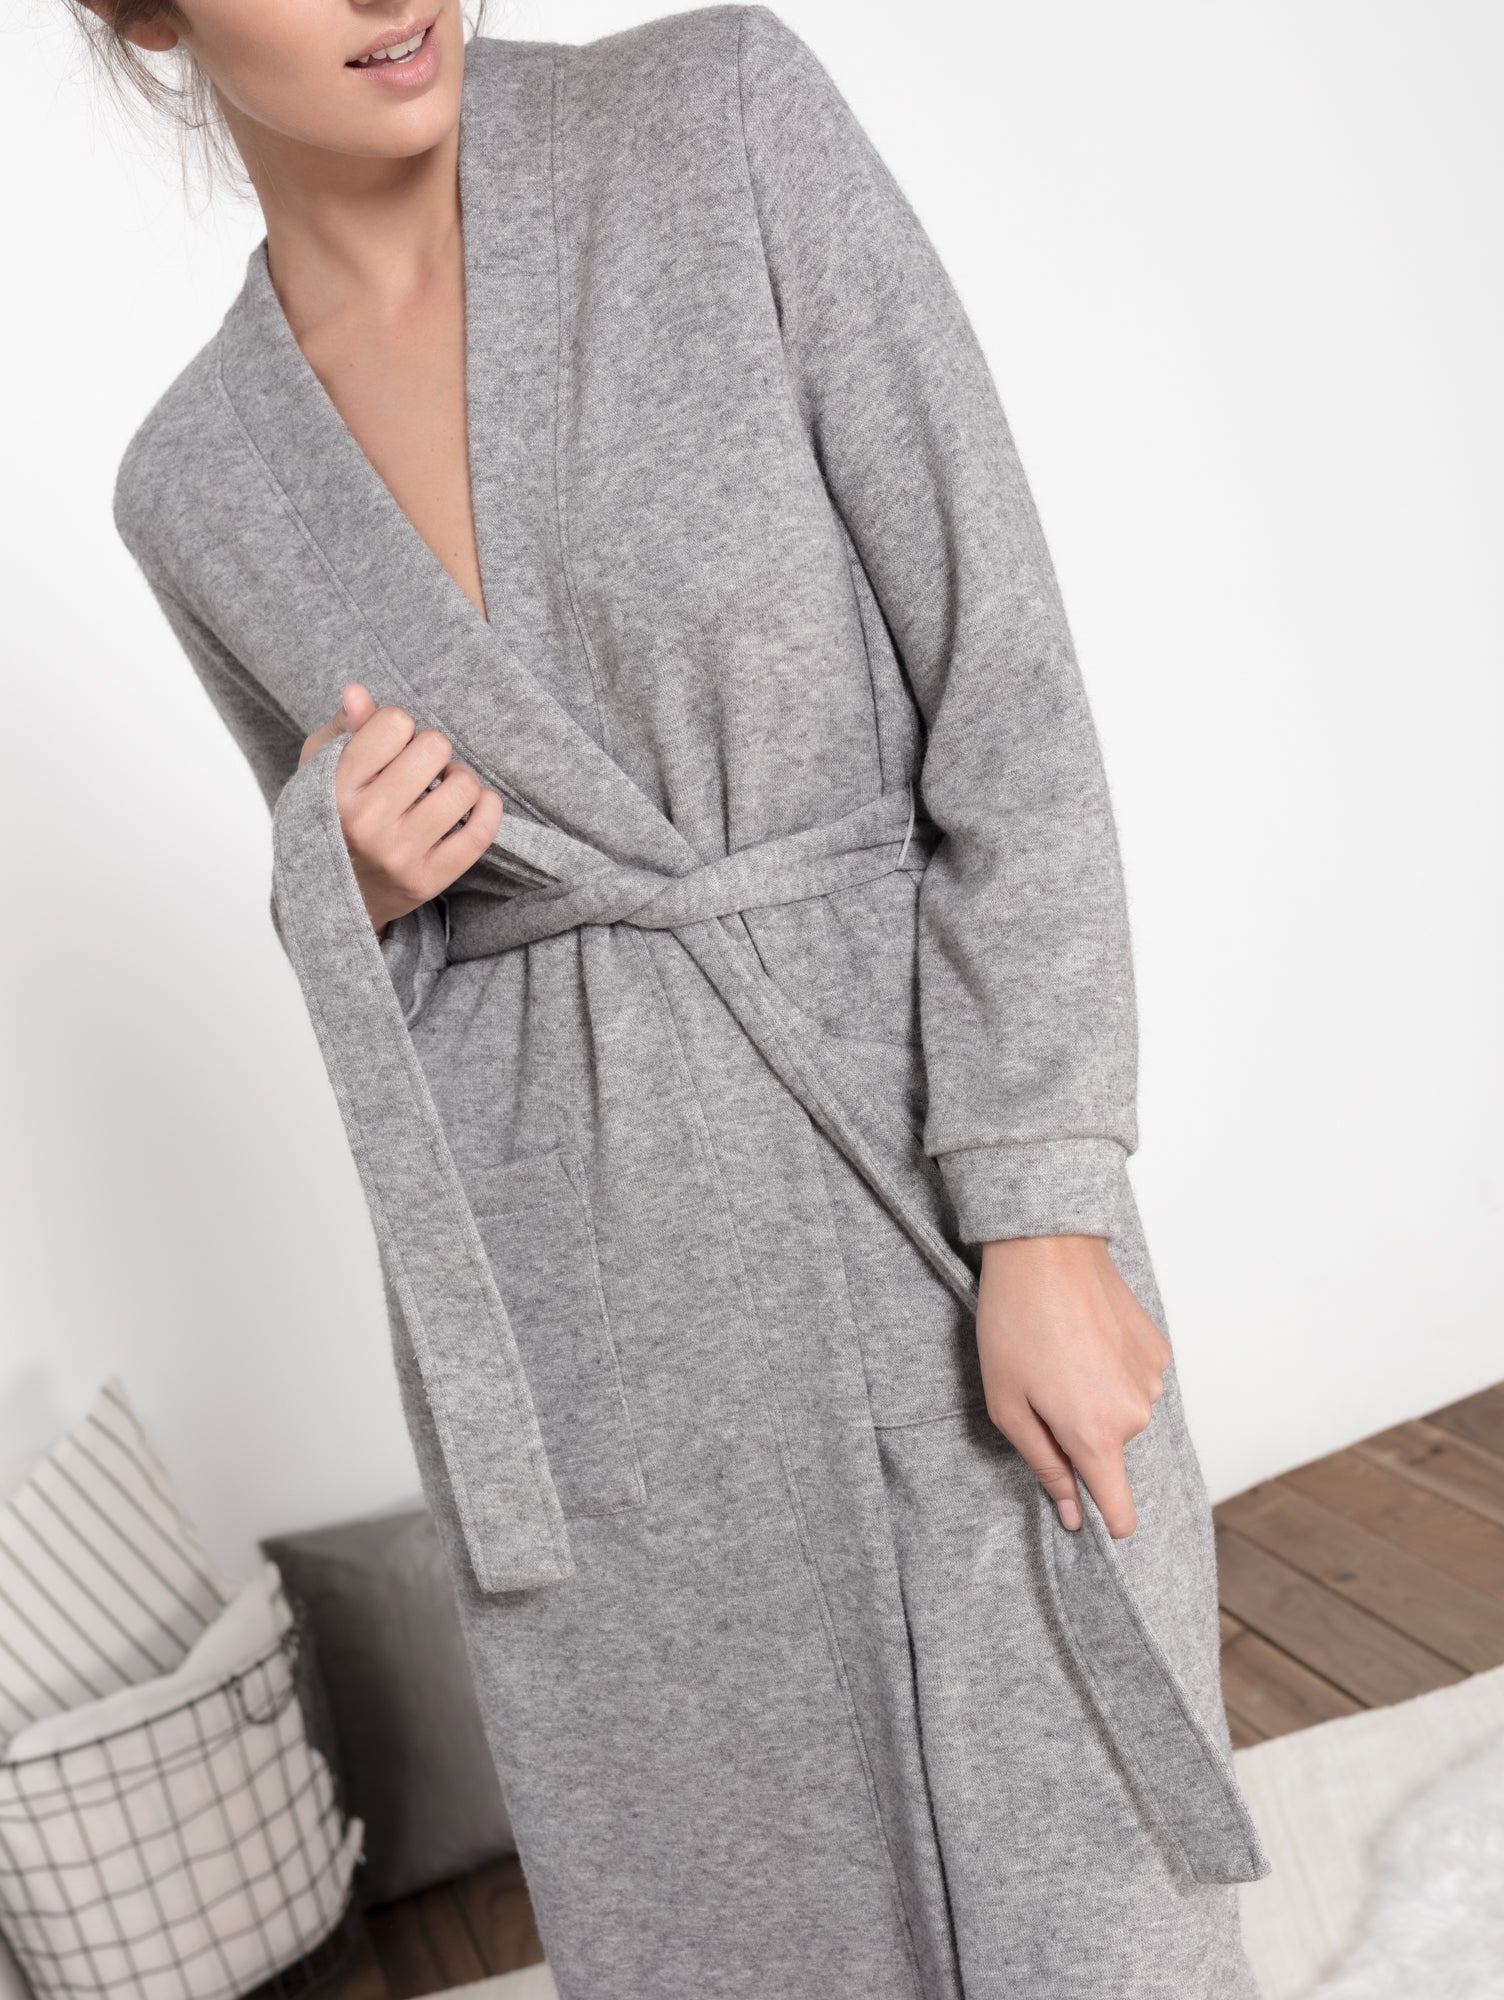 bata de mujer color gris, colección homewear MONICA LENDINEZ